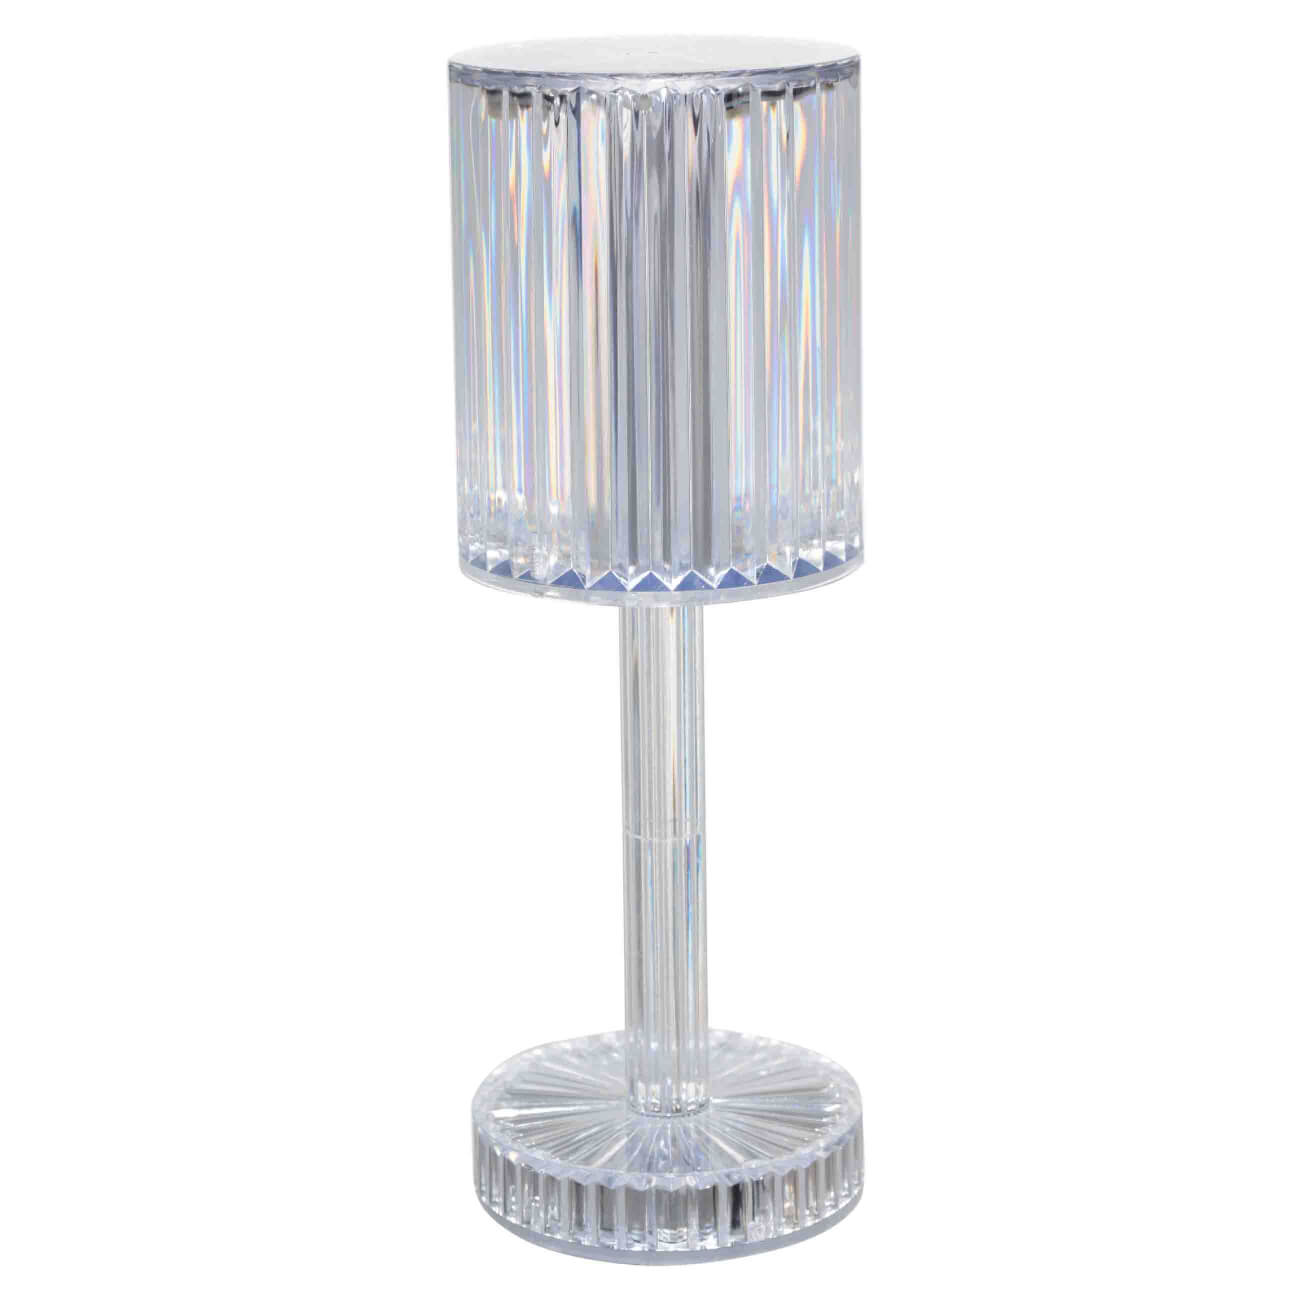 подсвечник 21 см для тонкой свечи на ножке металл серебристый fantastic Светильник сенсорный, 25 см, беспроводной, на ножке, акрил/металл, Полоска, Sunshine